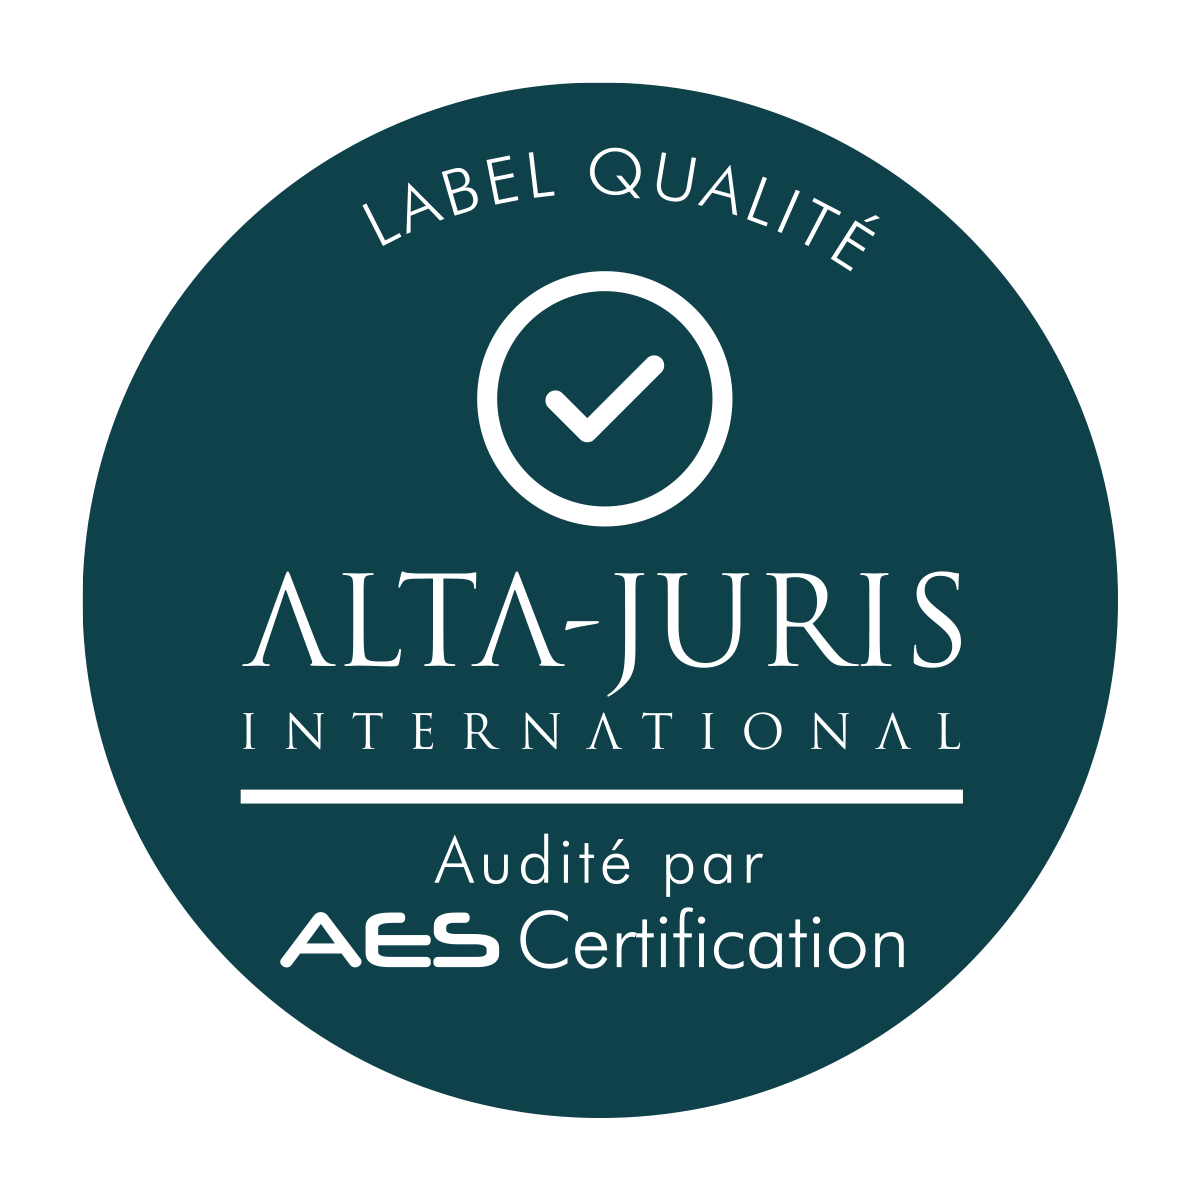 Labellisé qualité ALTA-JURIS